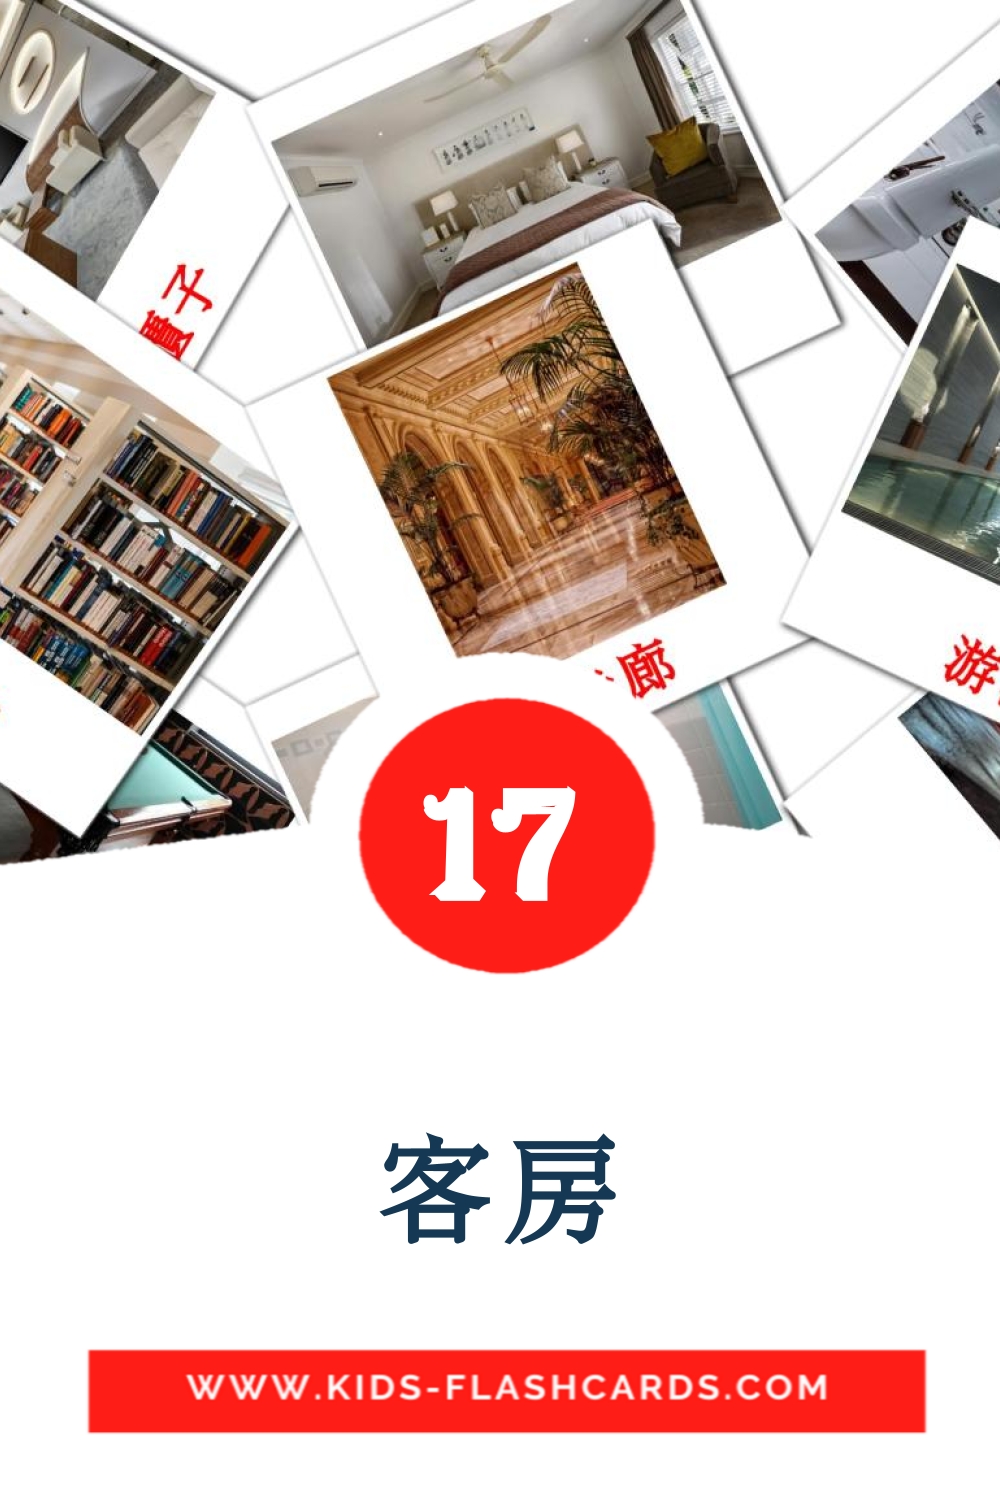 17 客房 Picture Cards for Kindergarden in chinese(Traditional)